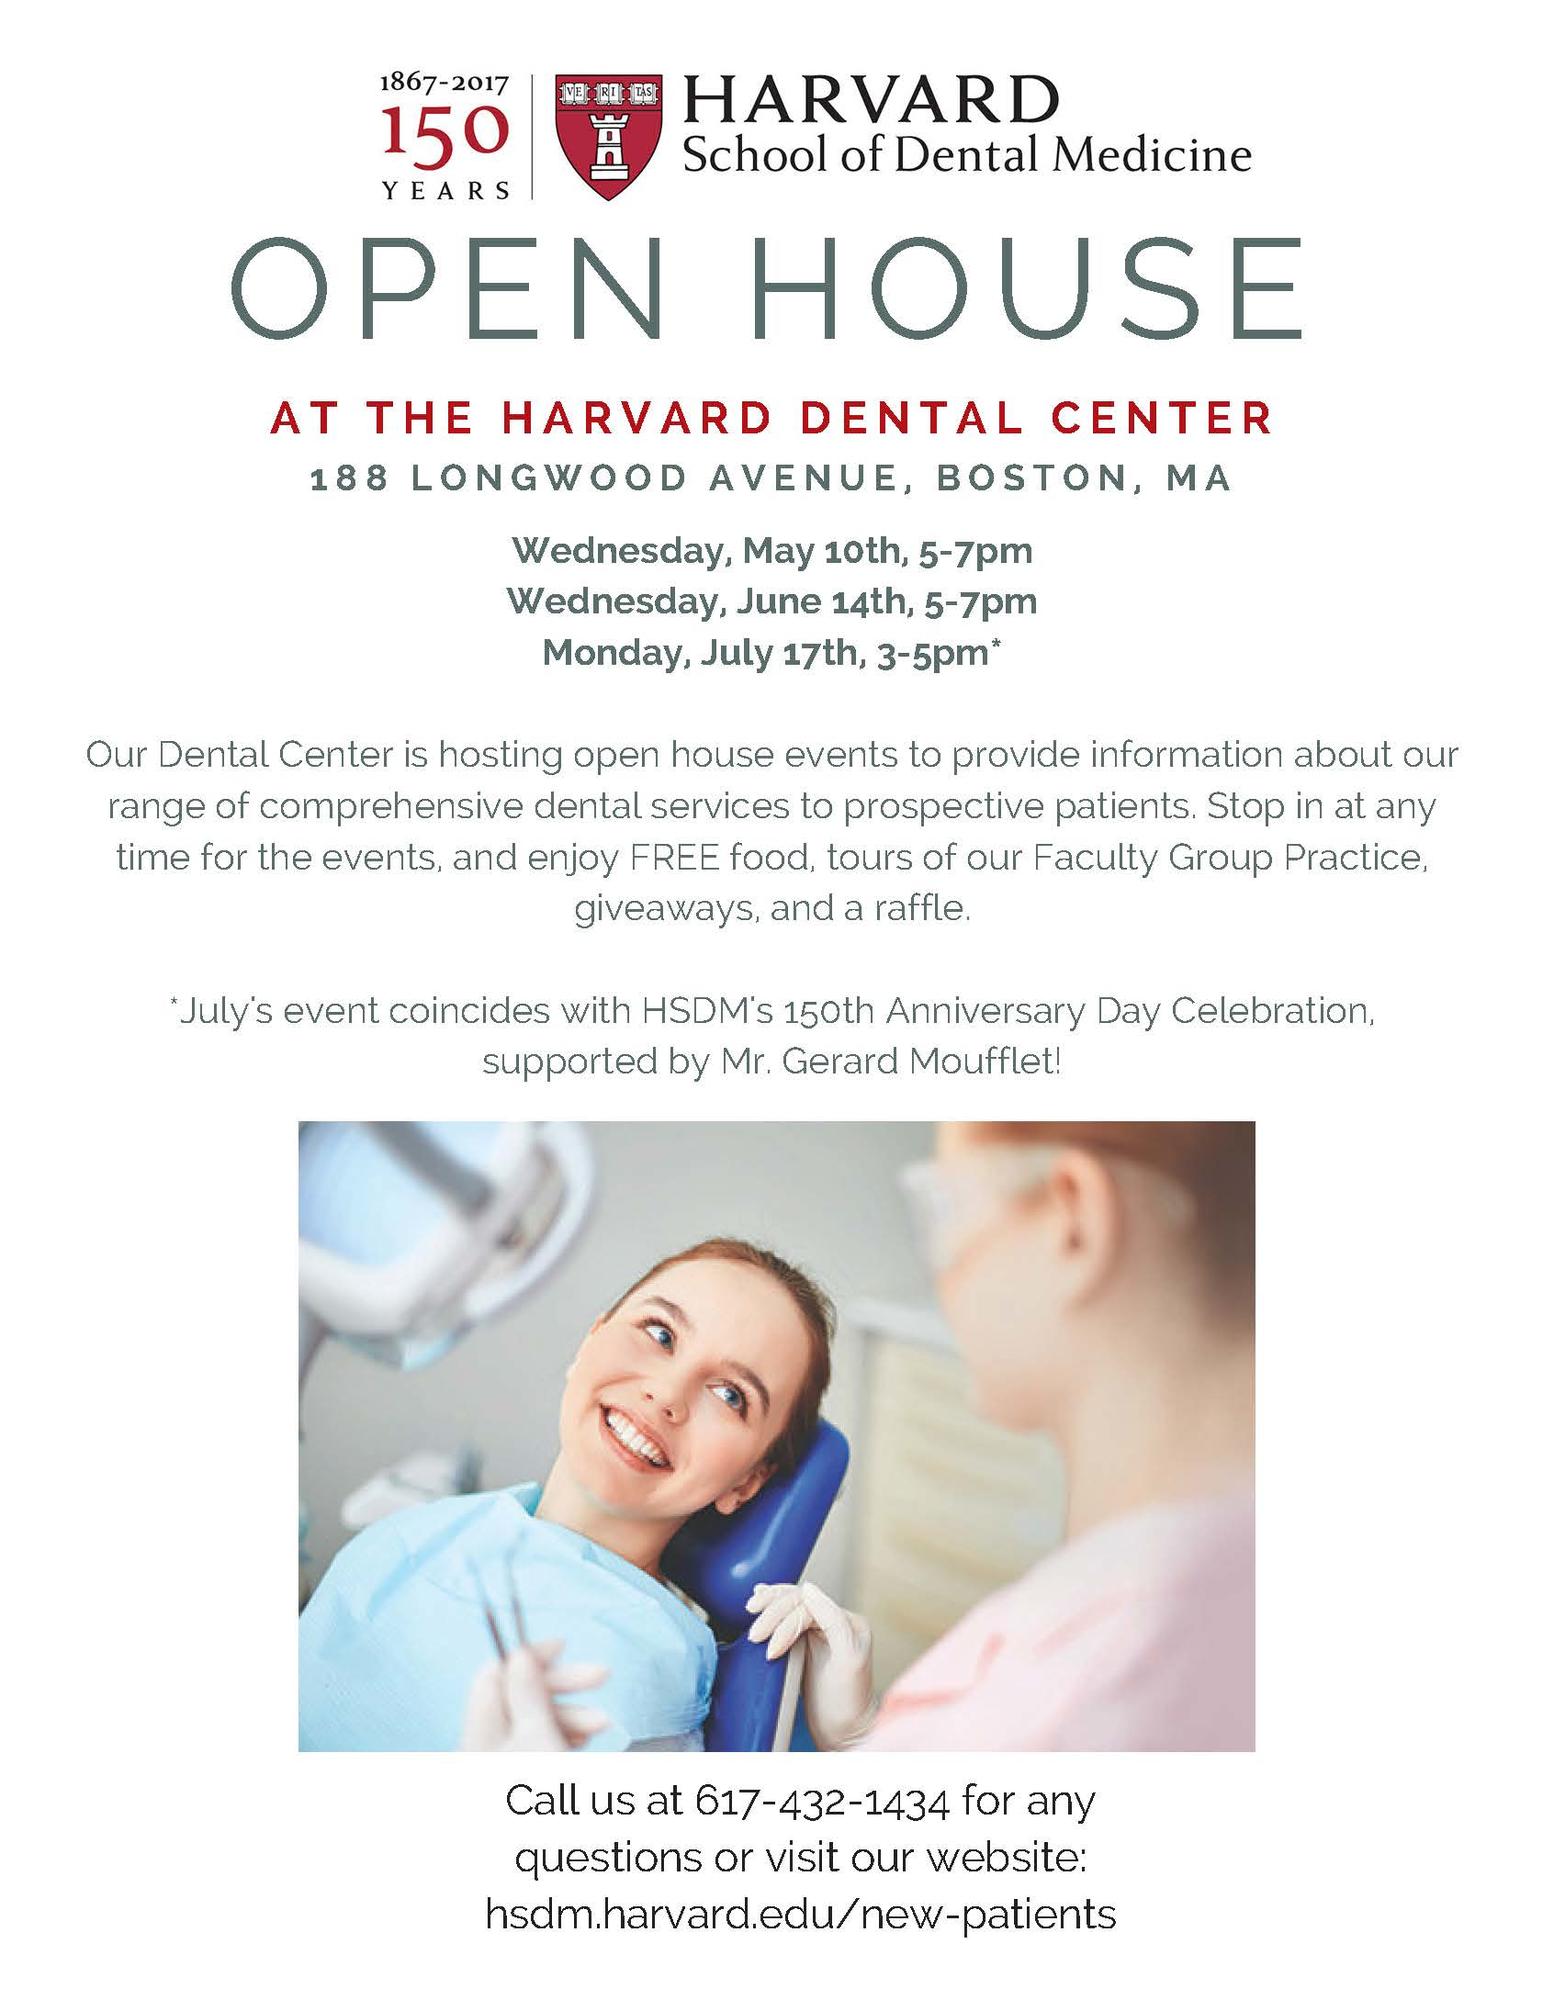 Open House at the Harvard Dental Center | Harvard School of Dental Medicine